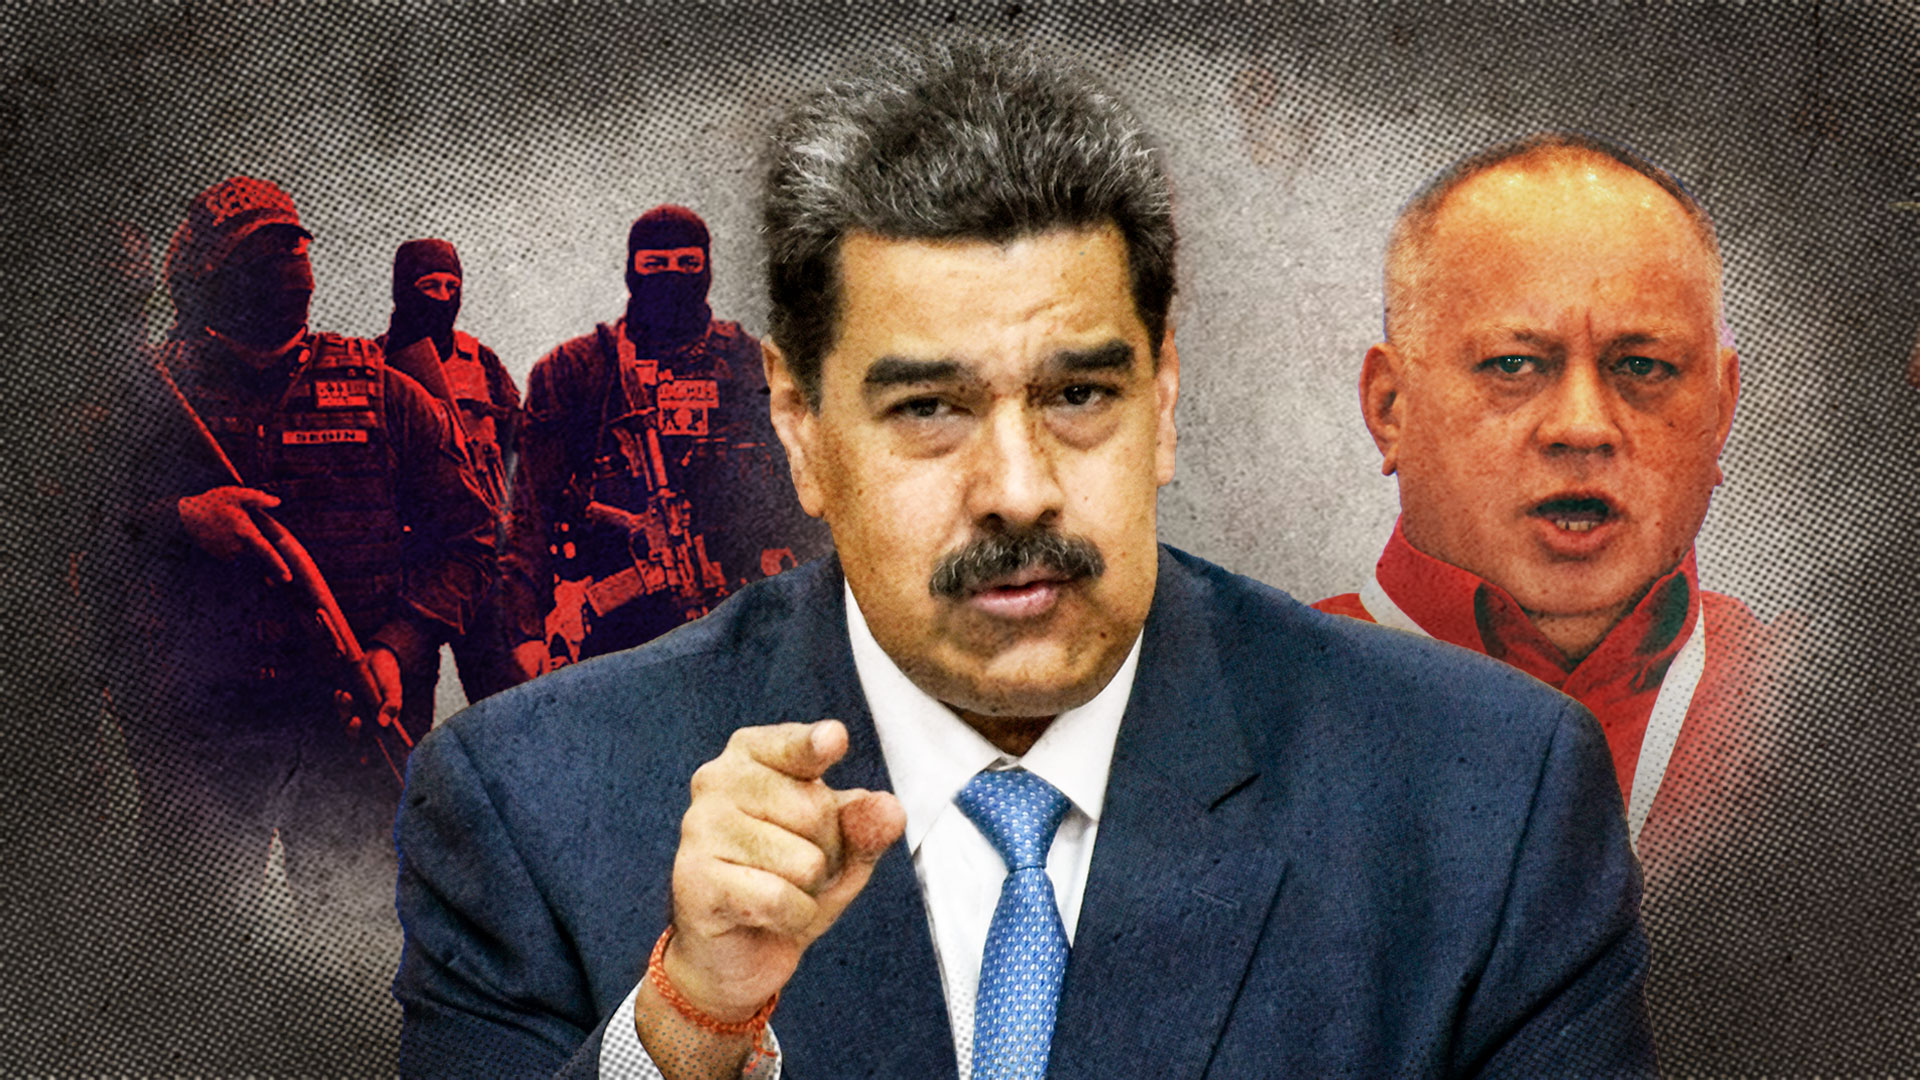 Crucifixiones, abusos sexuales, descargas eléctricas y centros clandestinos: la ONU reveló los escalofriantes métodos de tortura de la dictadura de Maduro